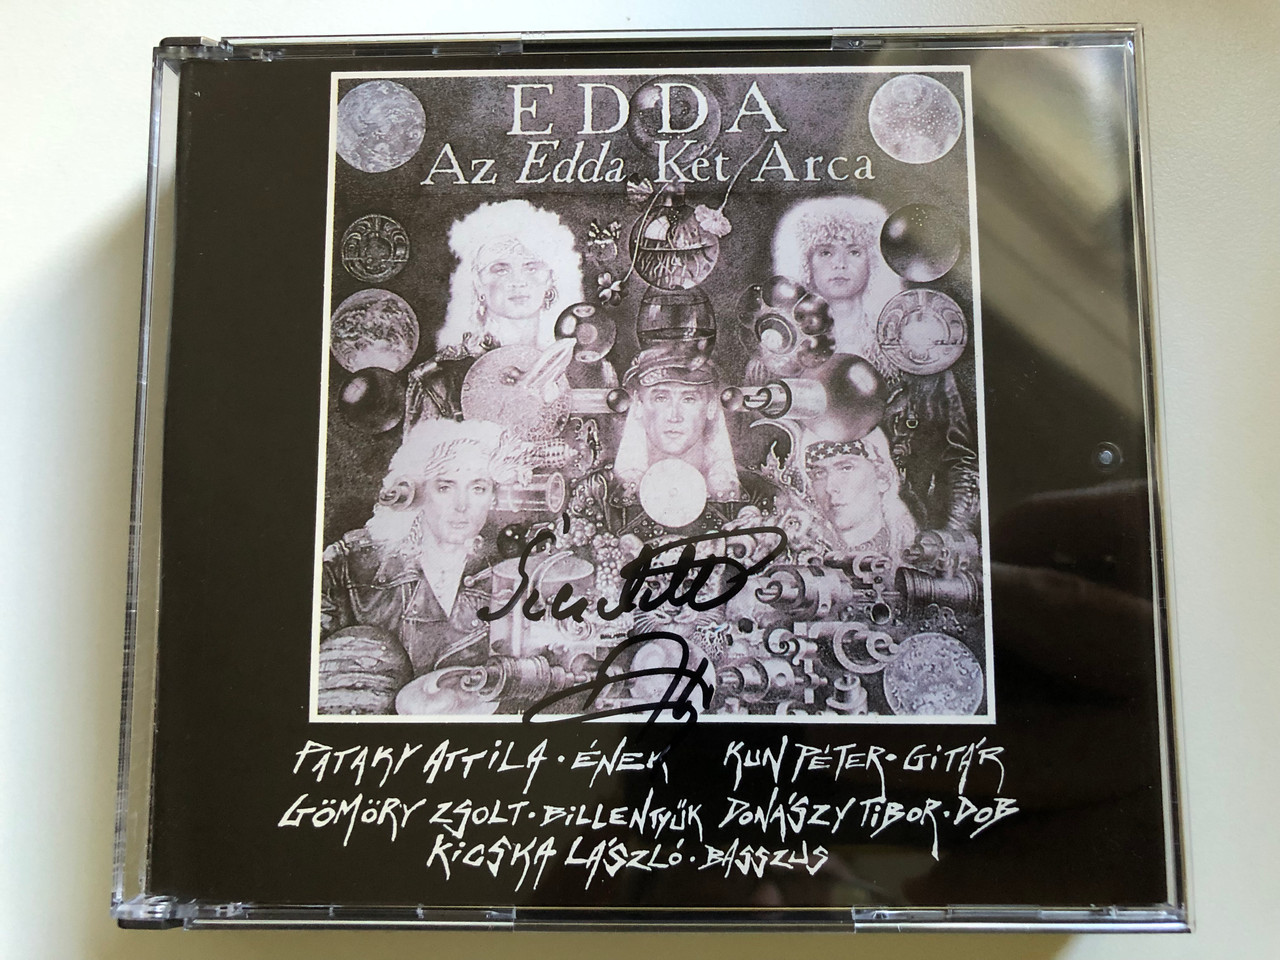 Edda – Az Edda Két Arca / Pataky Attila - enek; Kun Péter - gitar; Gömöry  Zsolt - billentyuk; Donászy Tibor - dob; Kicska László - basszus / New Tone  2x Audio CD 1992 / NTCD 0291 - bibleinmylanguage